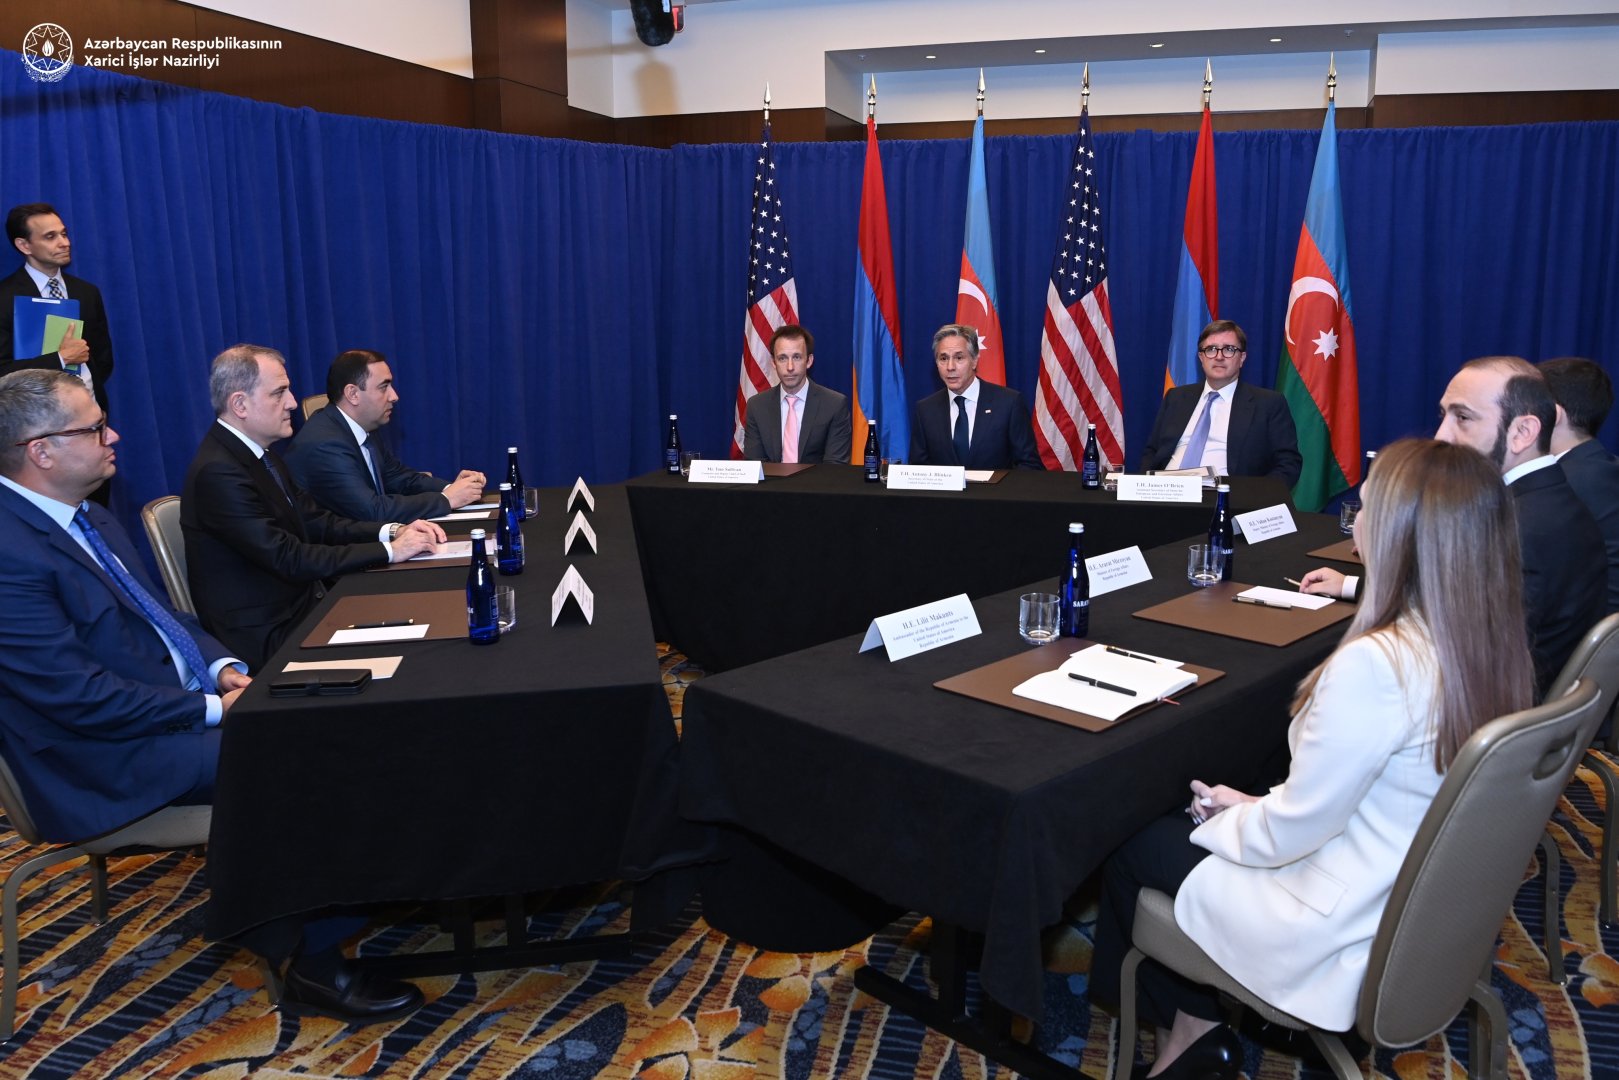 Азербайджан и Армения близки к достижению мирного соглашения - госсекретарь США